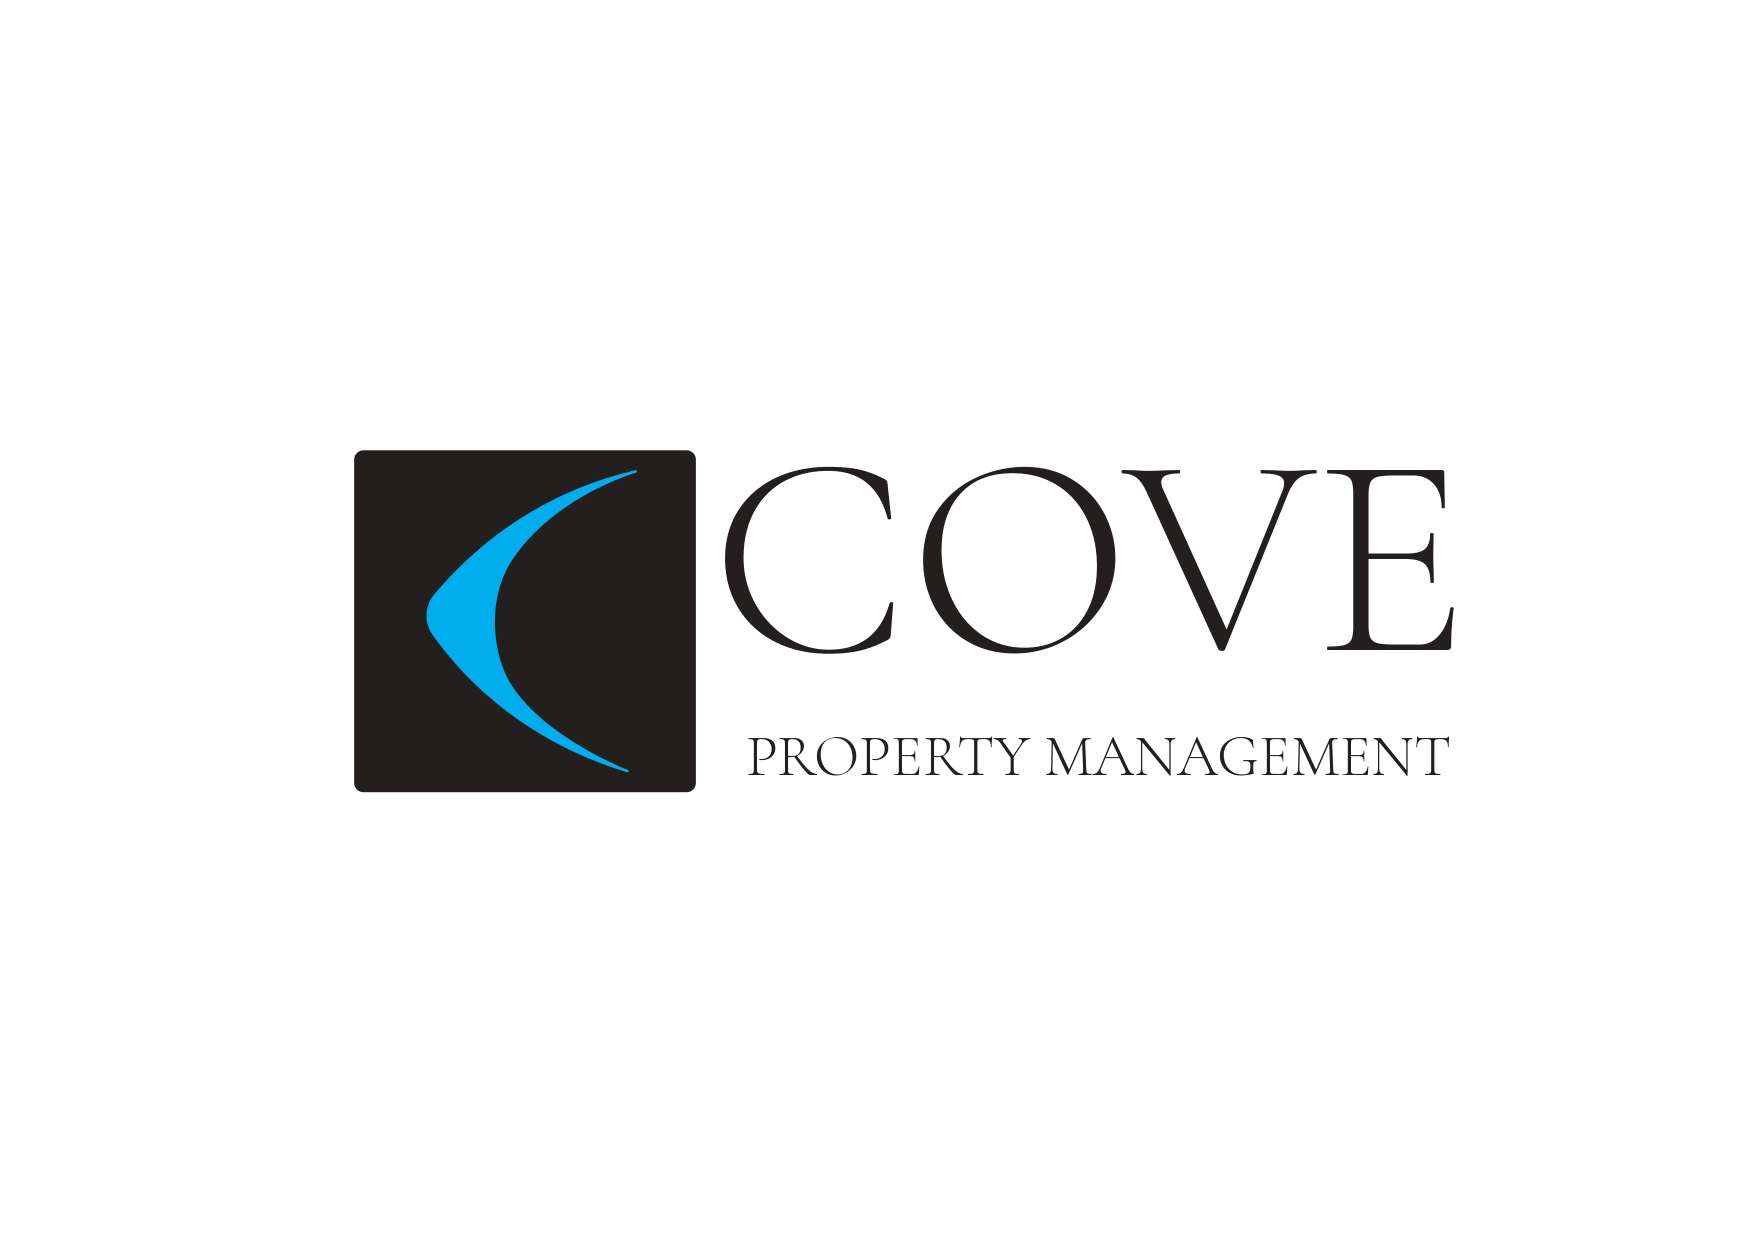 Cove Property Management LLC